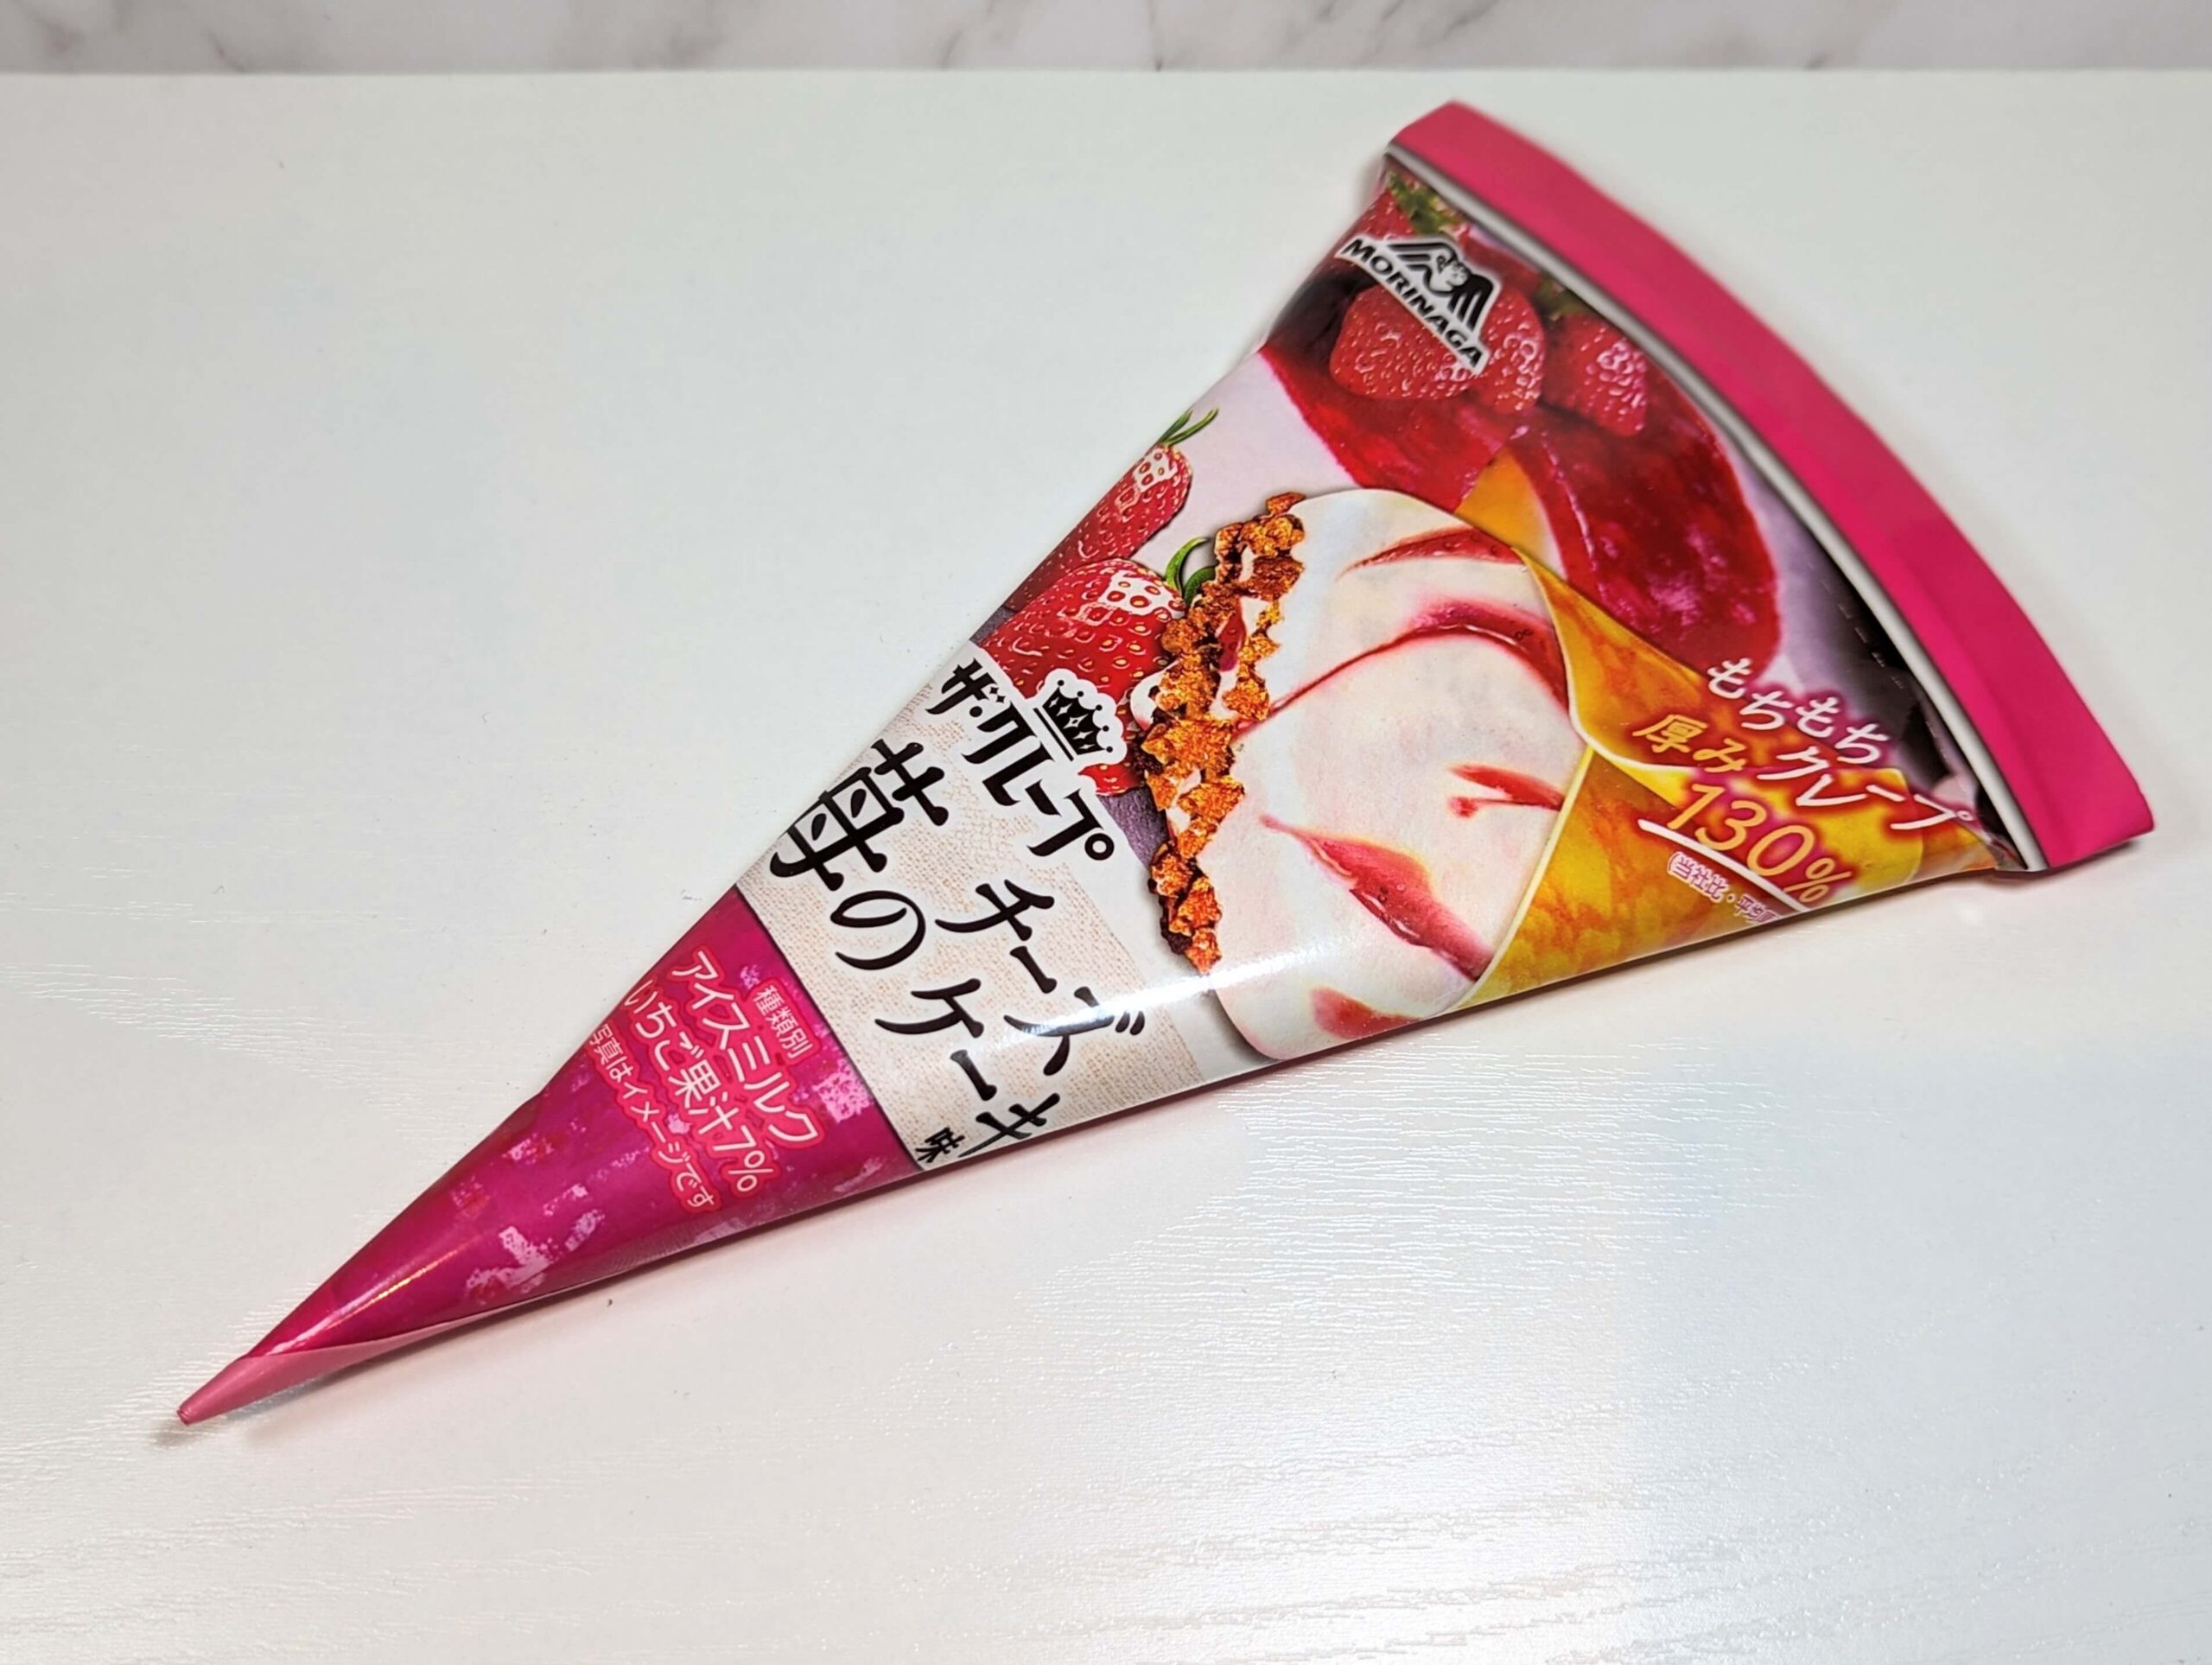 セブンイレブン限定・森永製菓 ザ・クレープ 苺のチーズケーキ味 (1)